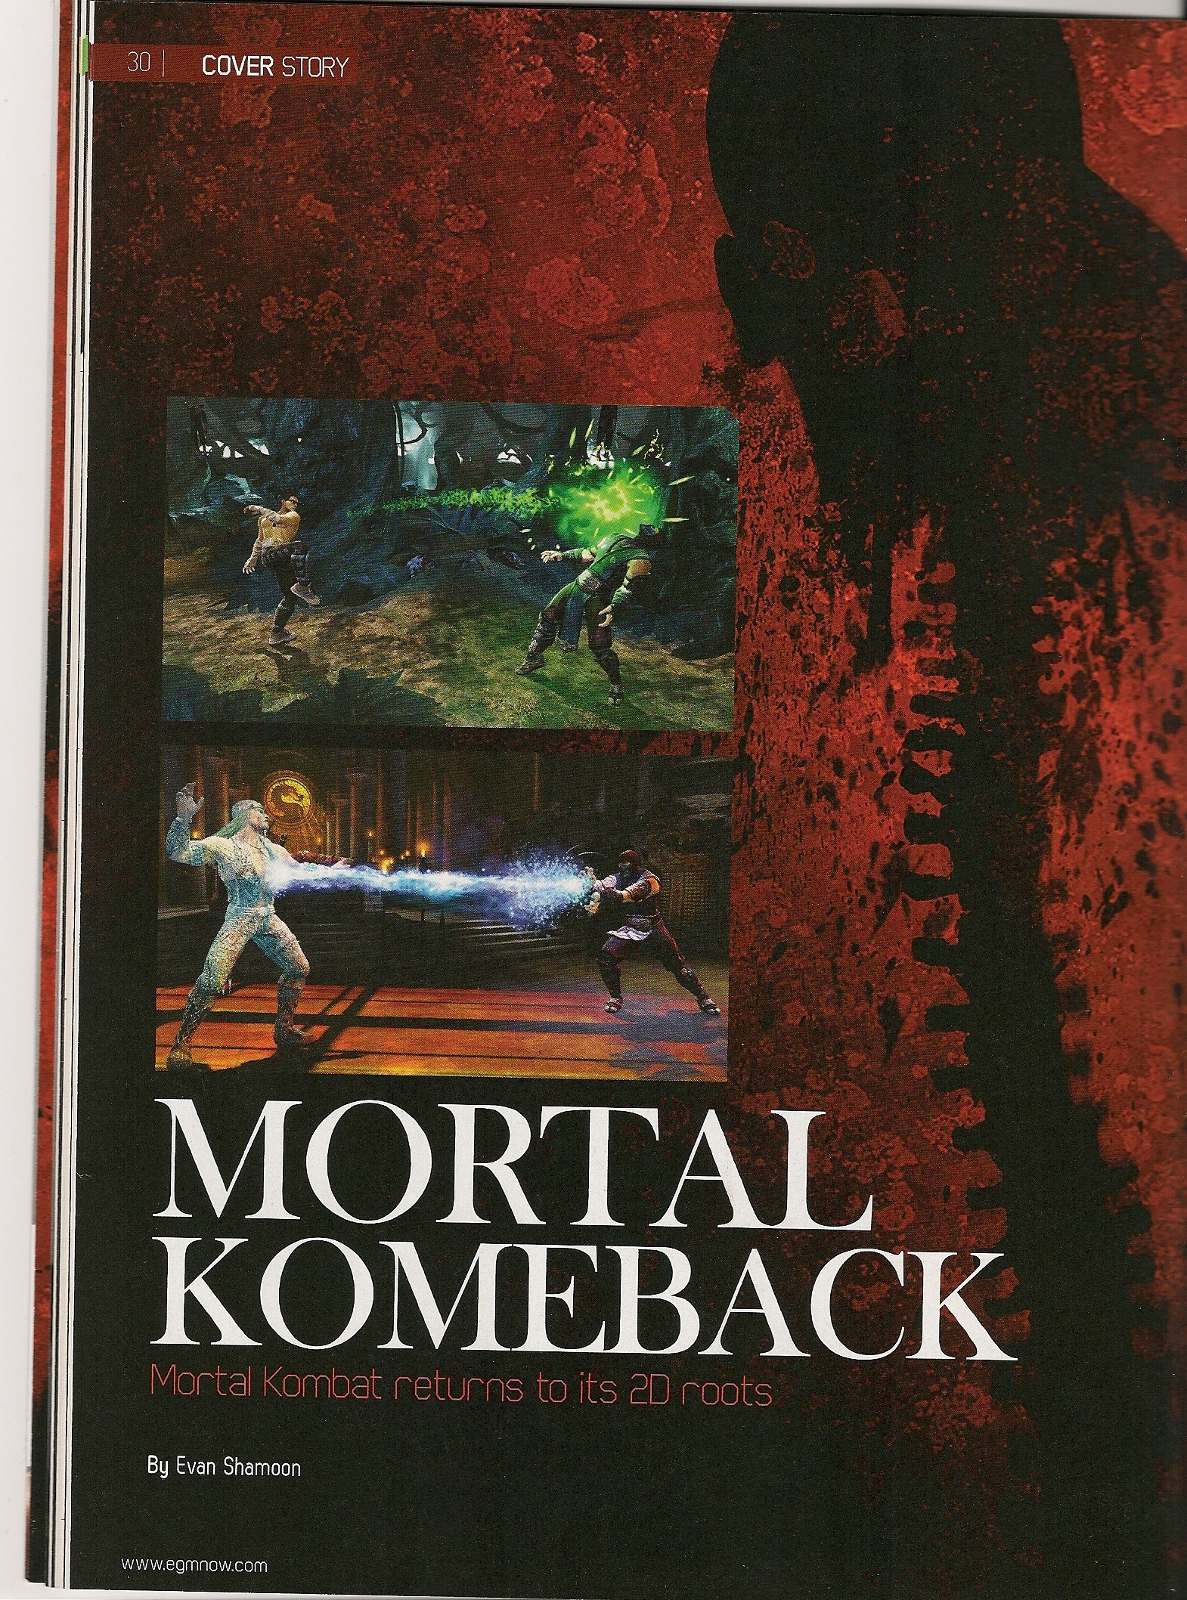 Mortal Kombat 9 a un mode online surpuissant et fait la couverture du dernier EGM